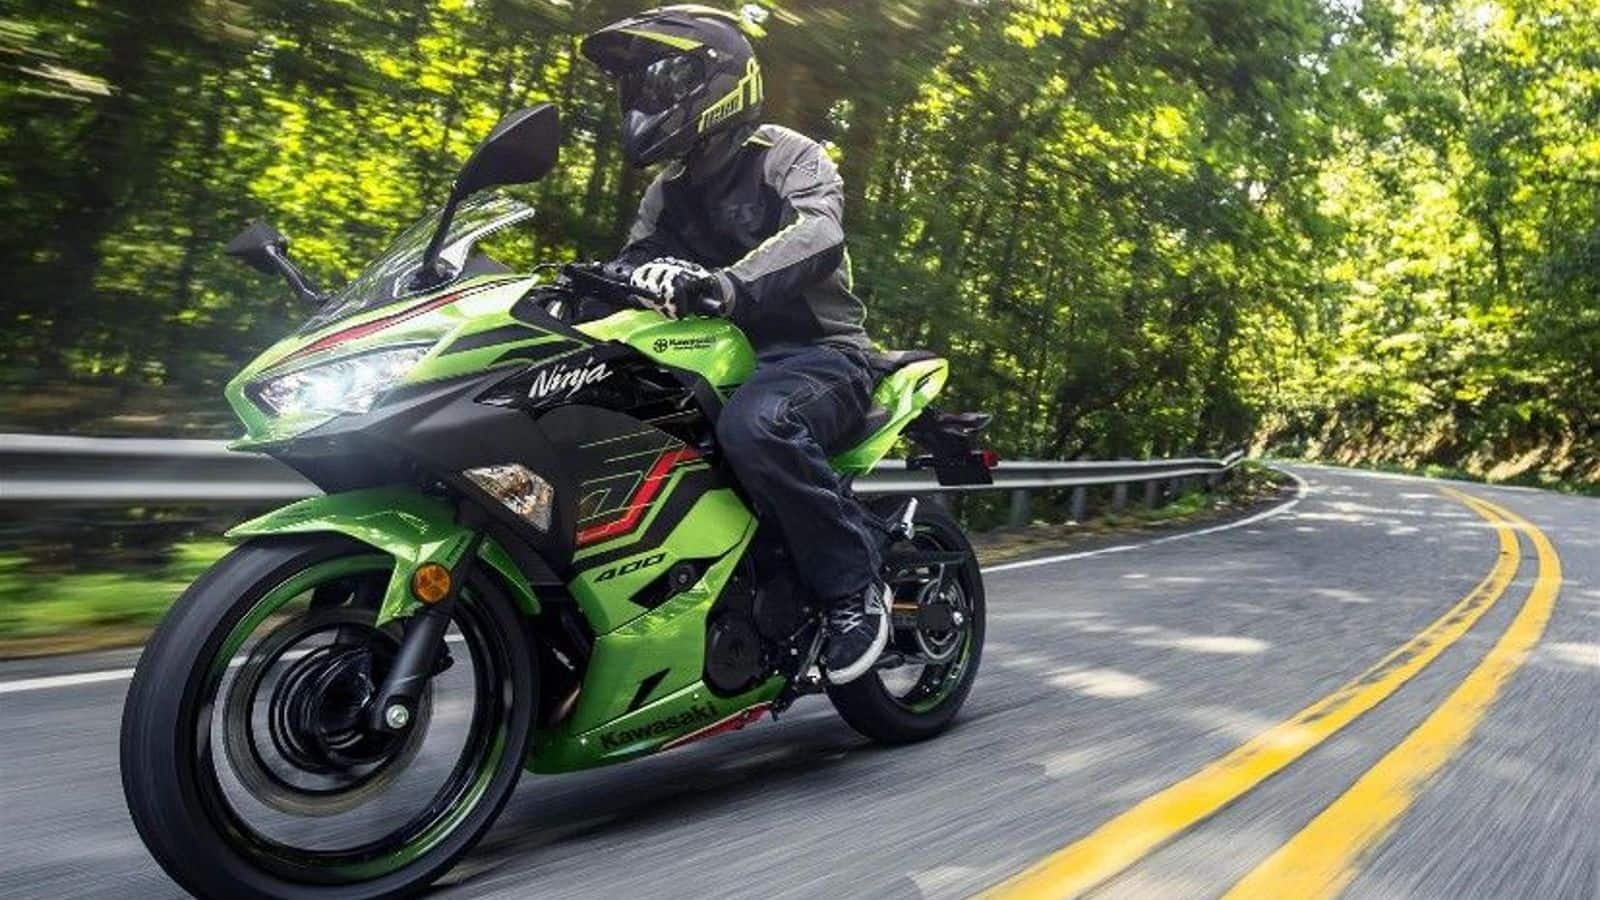 Kawasaki finally discontinues its Ninja 400 model in India